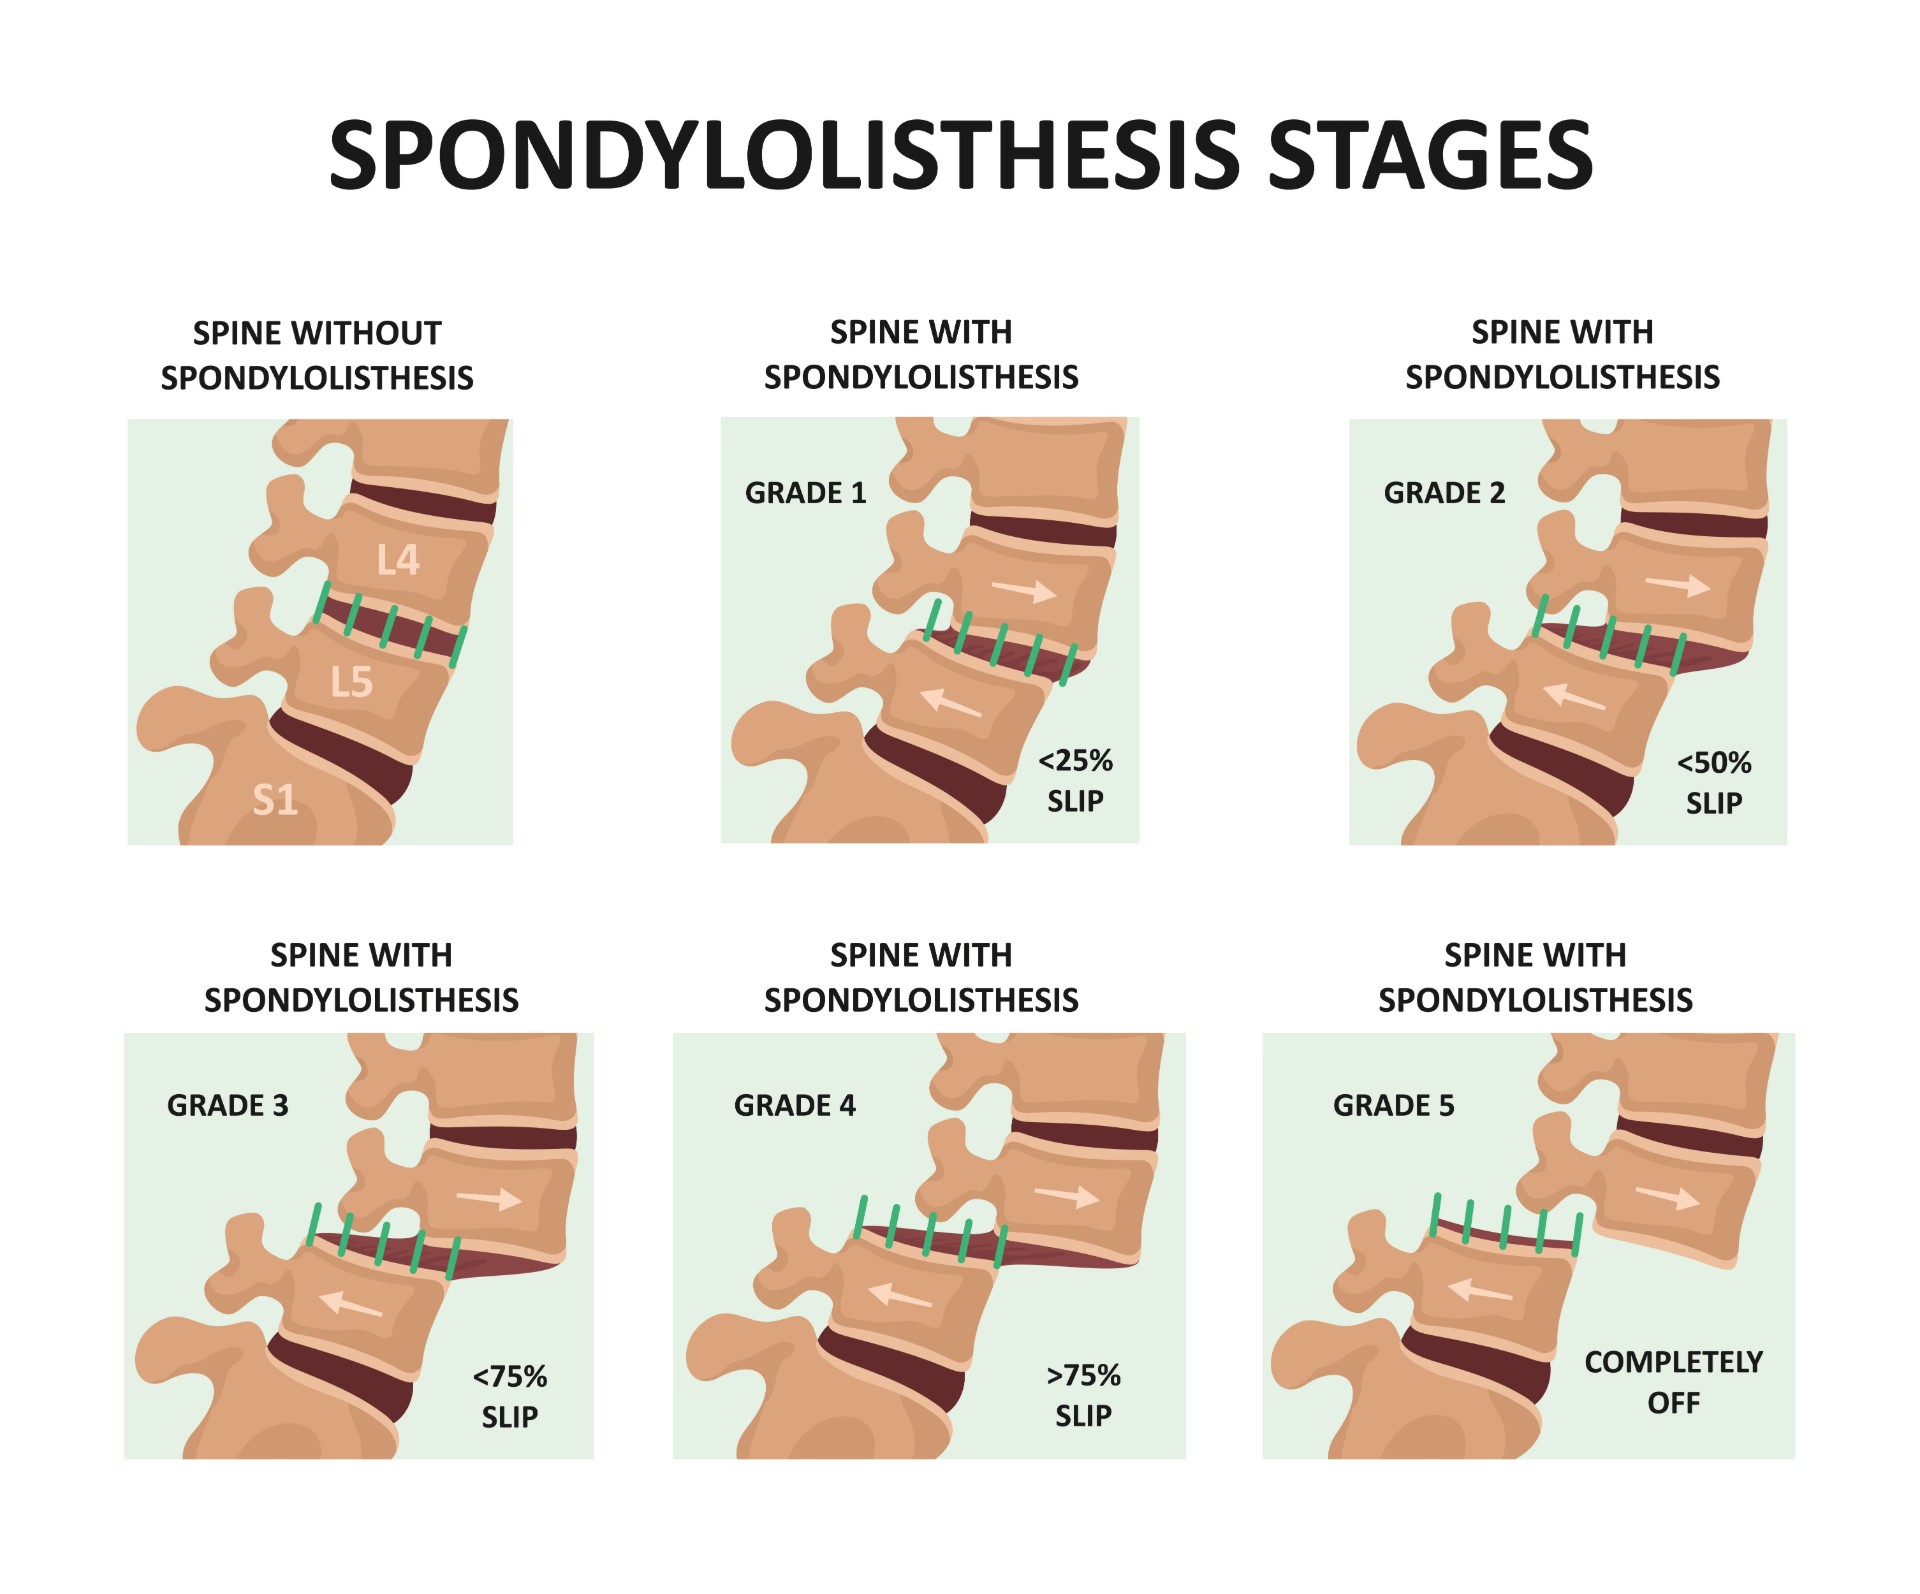 unstable spondylolisthesis symptoms